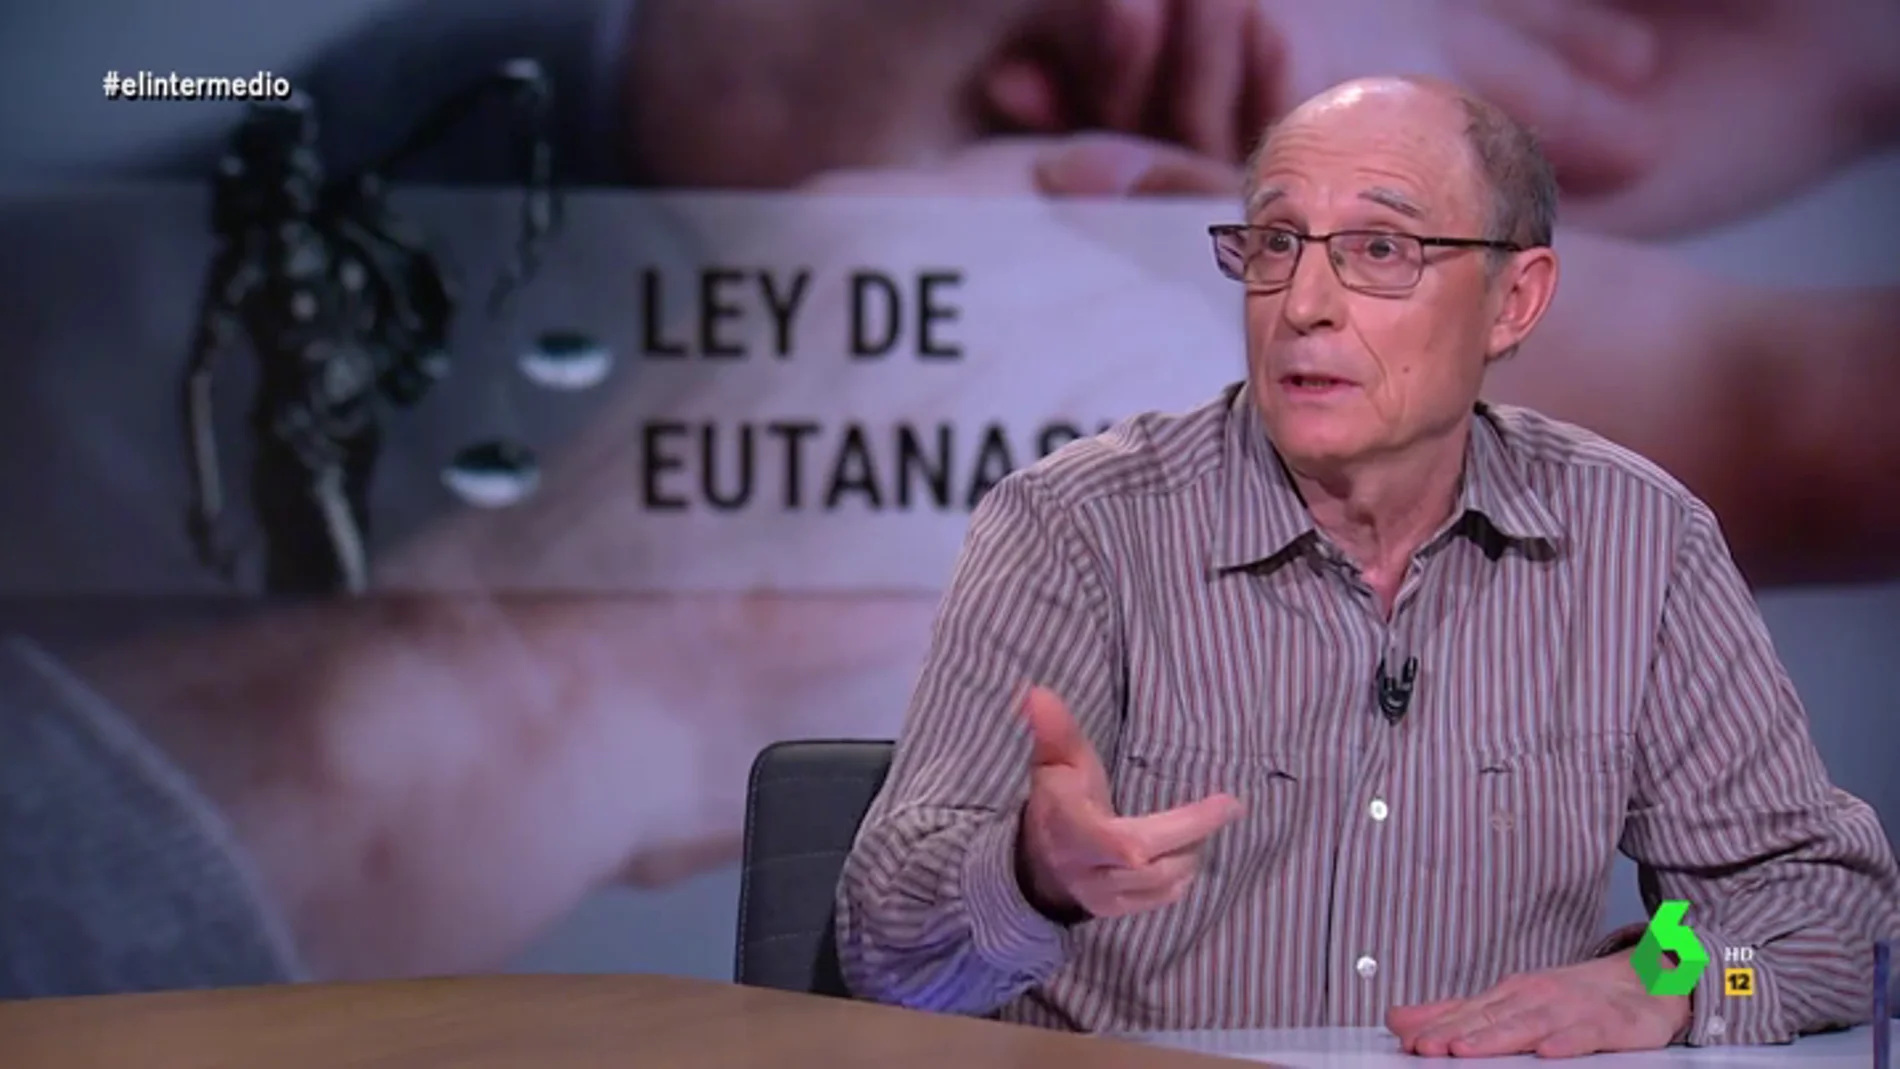 La indignación de Ángel Hernández con el PP por sus palabras sobre la eutanasia: "Es terrible, no han hecho más que mentir"